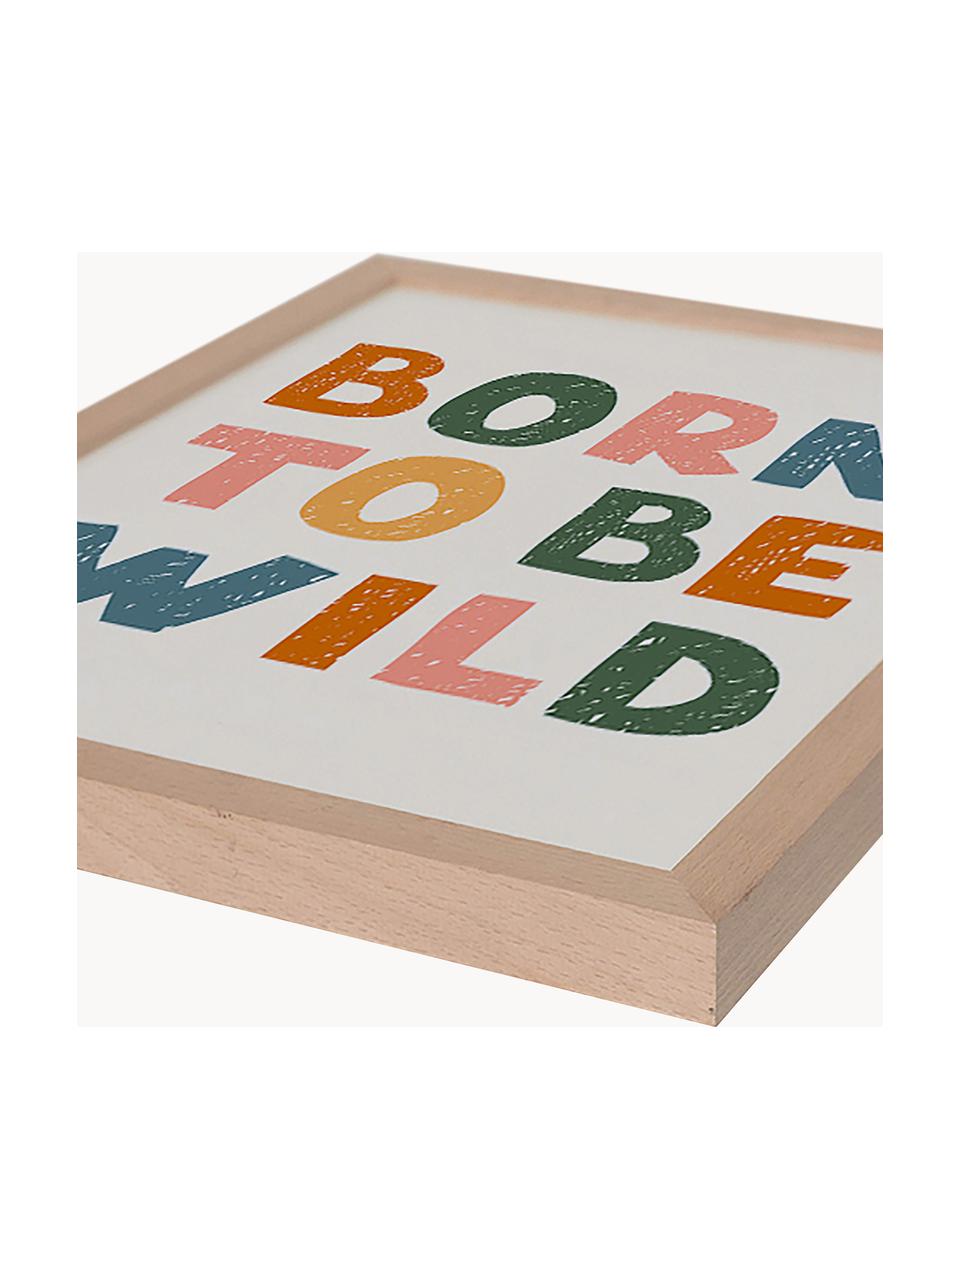 Oprawiony druk cyfrowy Born to Be Wild, Jasne drewno naturalne, złamana biel, wielobarwny, S 33 x W 43 cm